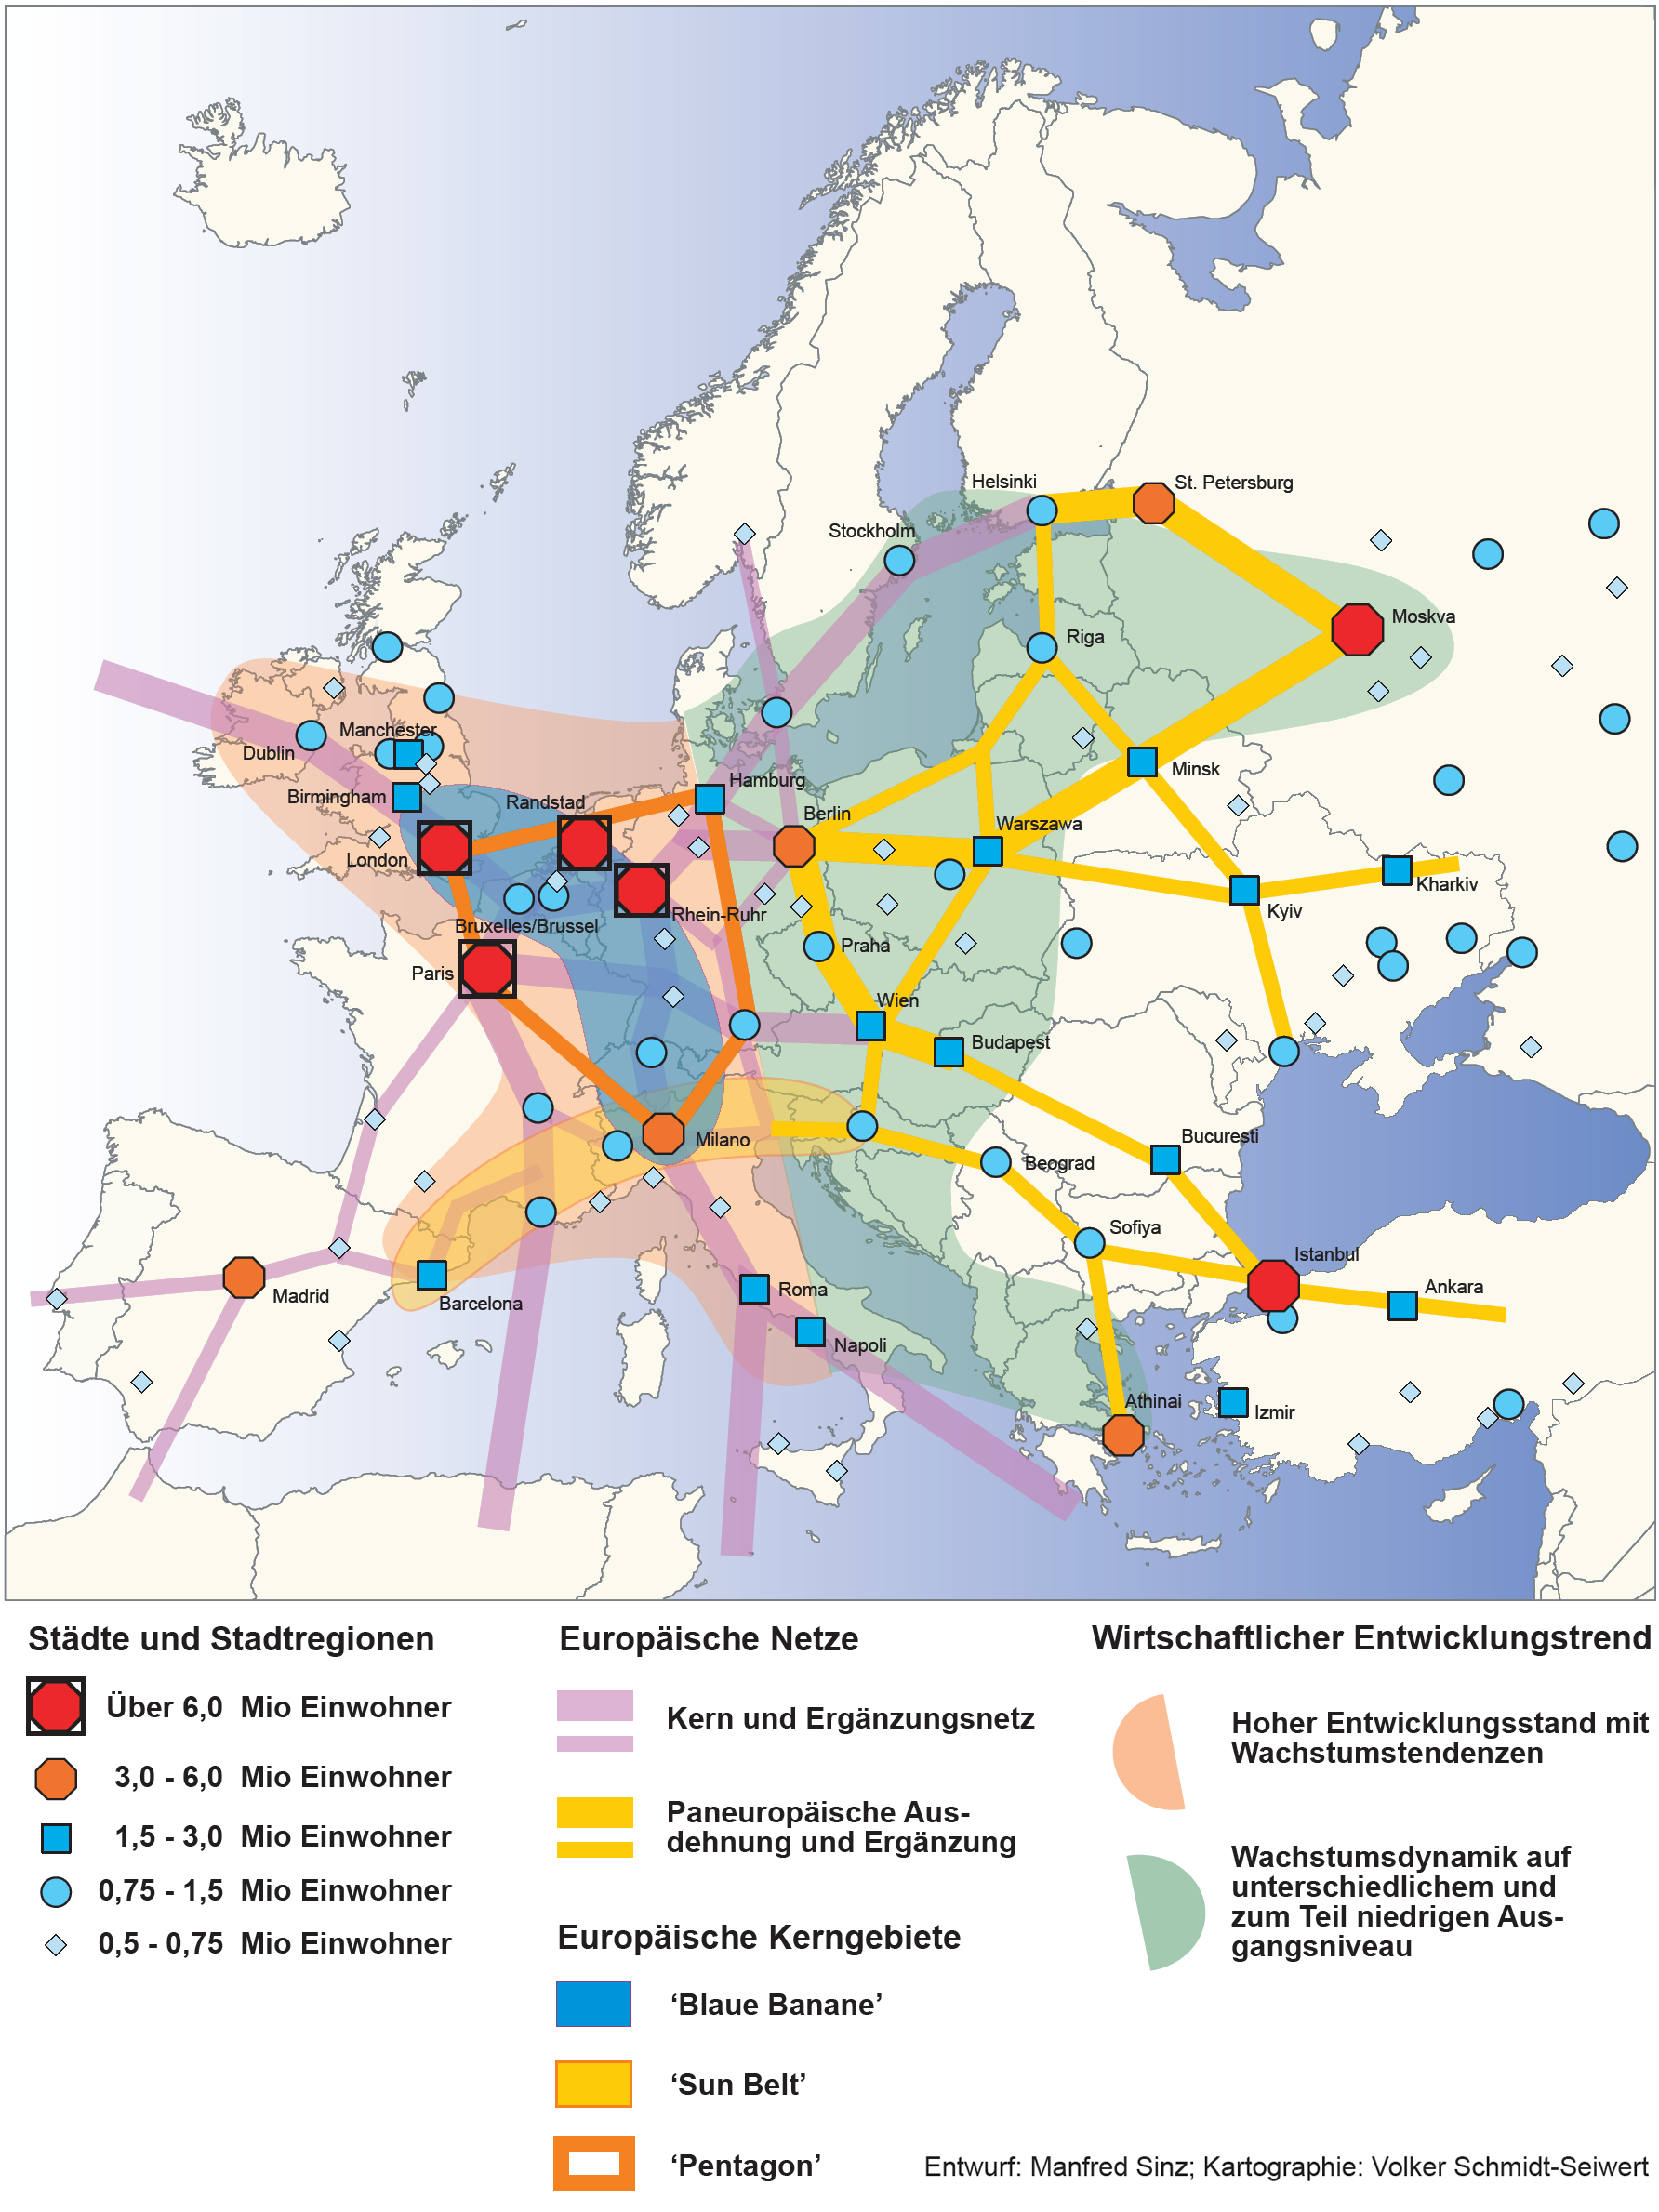 Nová geografie Evropy v logice sítí a uzlů: síť metropolitních území, evropský Pentagon, modrý banán, východní rozšíření EU, ale i